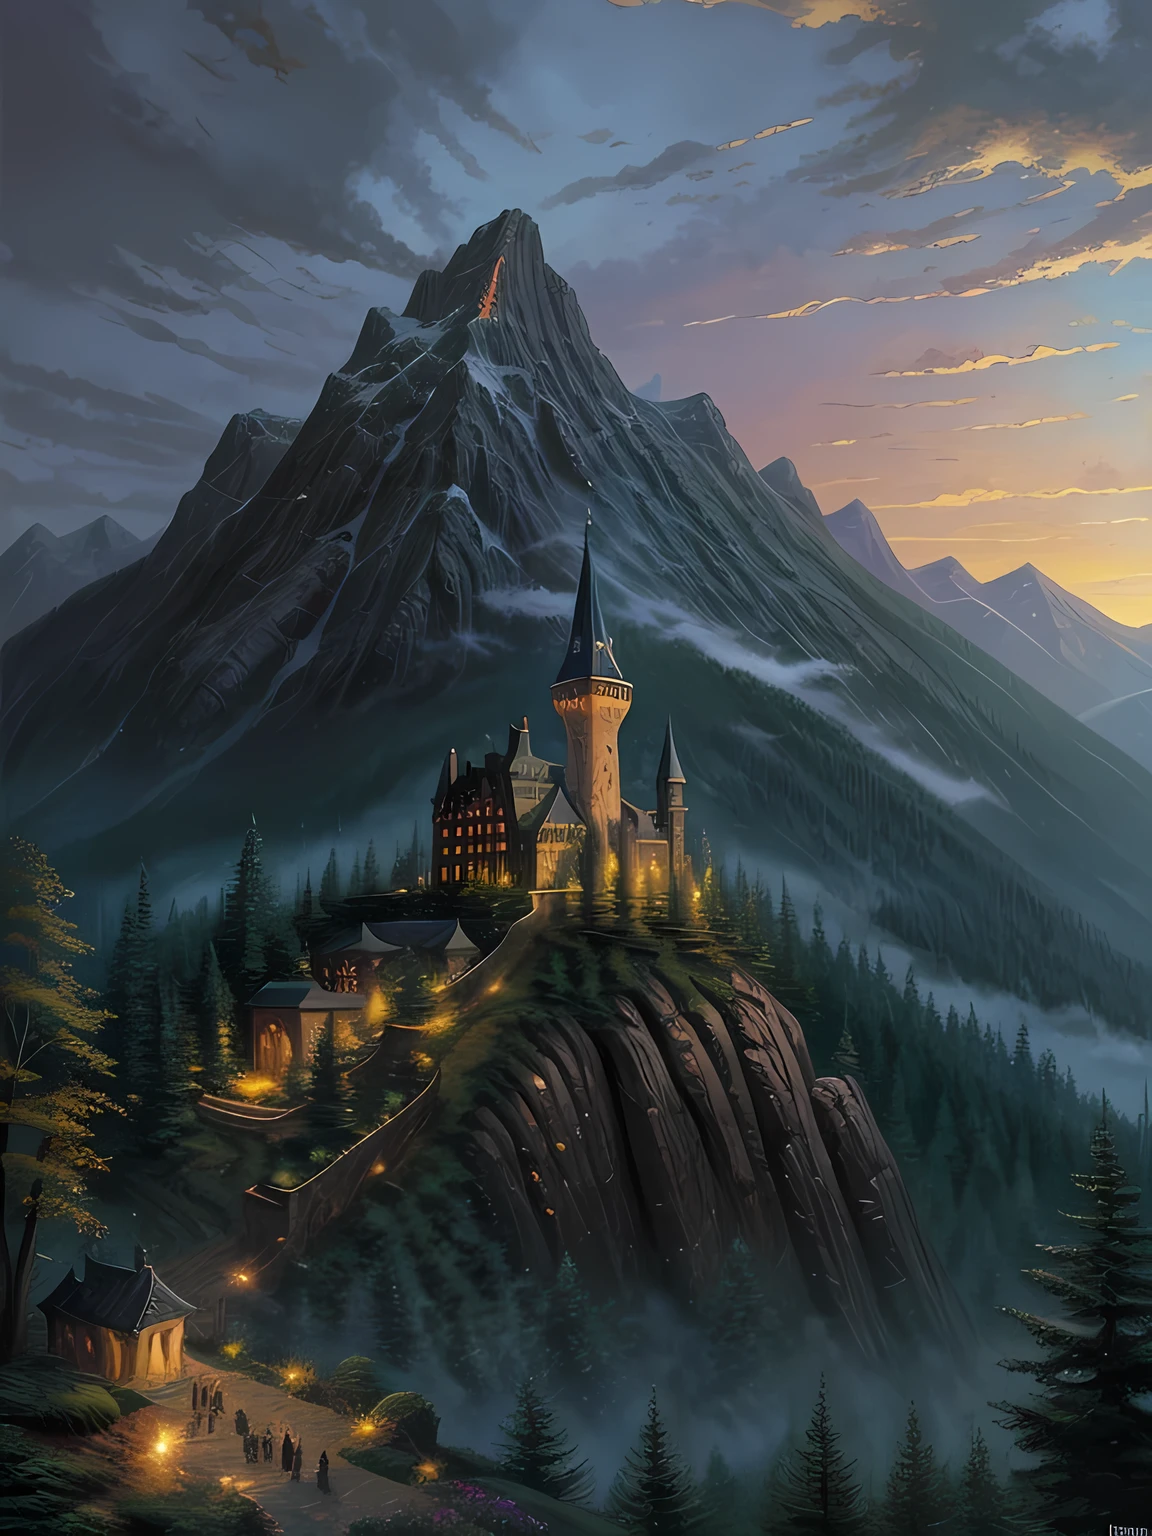 على الاطلاق, مظلم, شرير, منع برج السحرة عند سفح سلسلة جبال, محاطة بجدران حجرية وغابات, اللوحة بواسطة توماس كينكيد